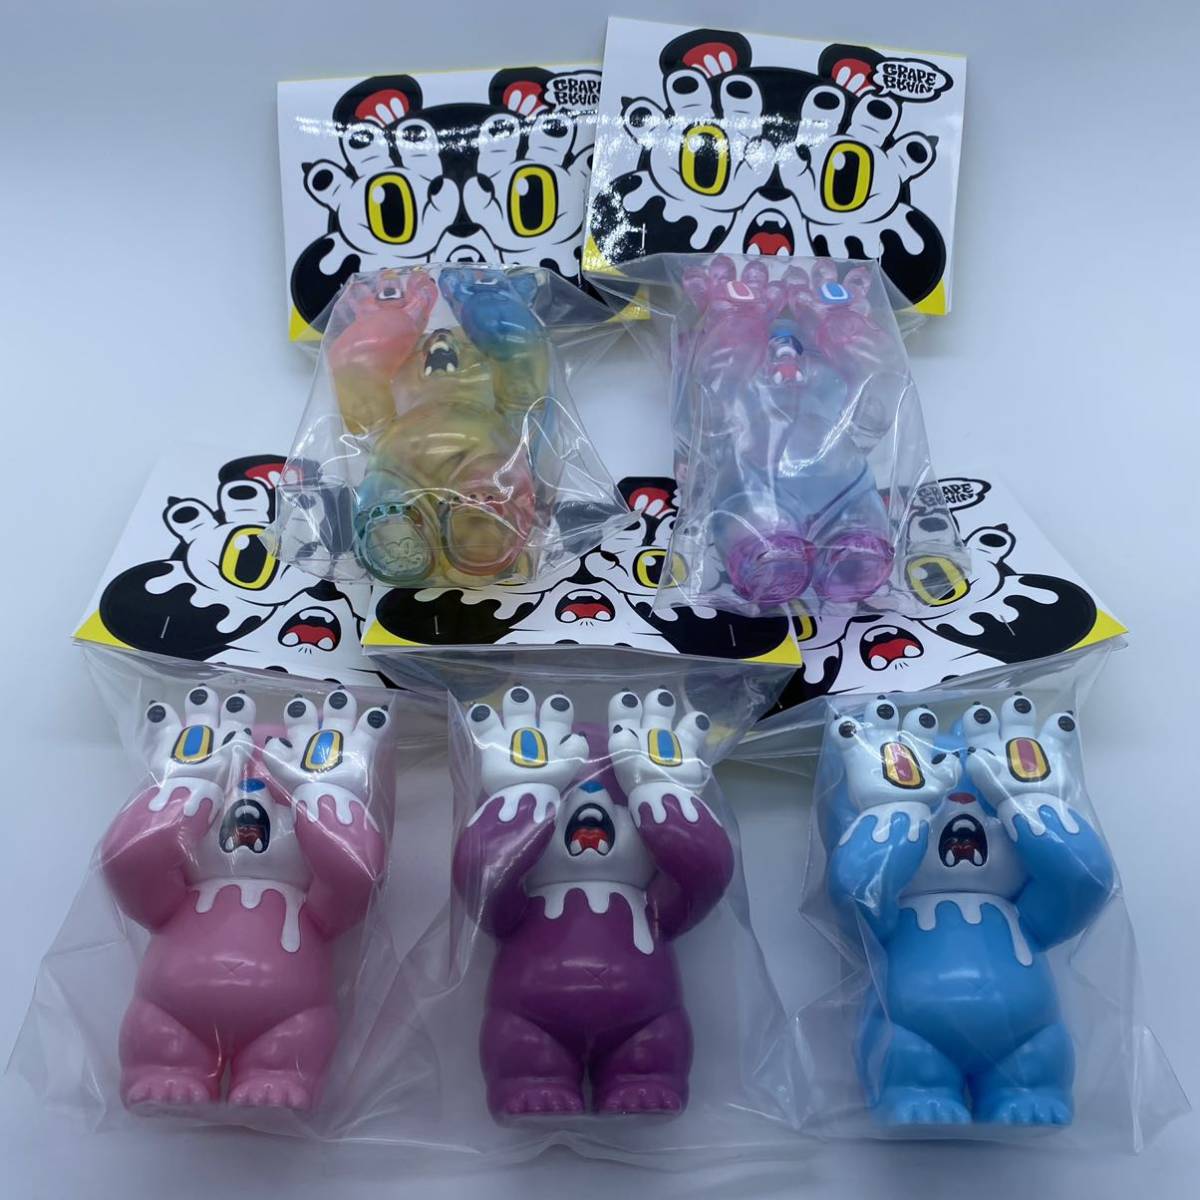 【通販激安】 zoo bear 5種セット grape brain zoo toys 激レア 一般